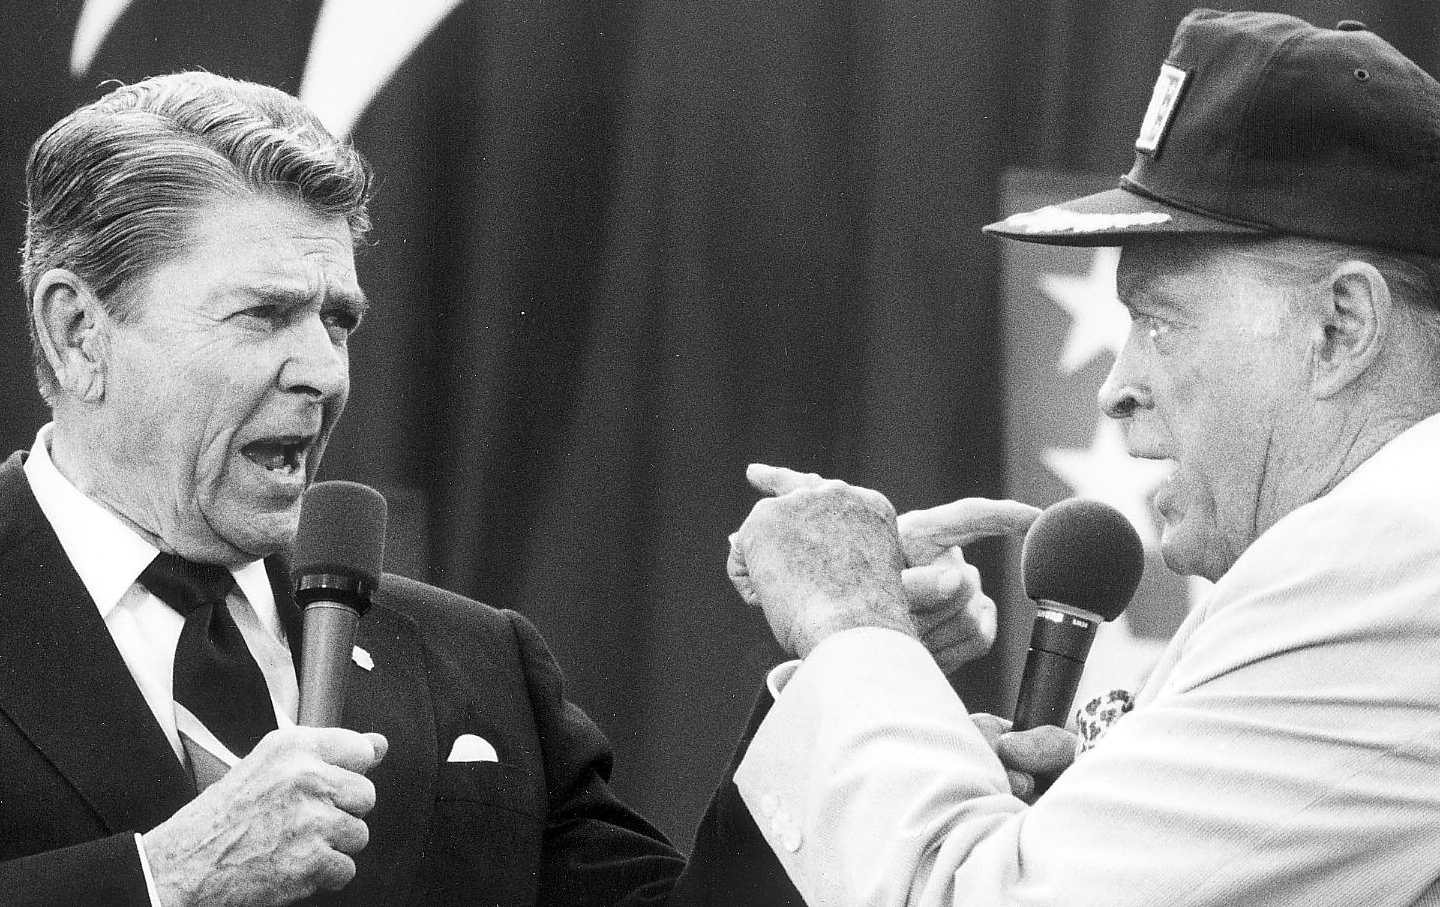 Ronald Reagan and Bob Hope at a USO appearance at Pope Air Force Base in North Carolina